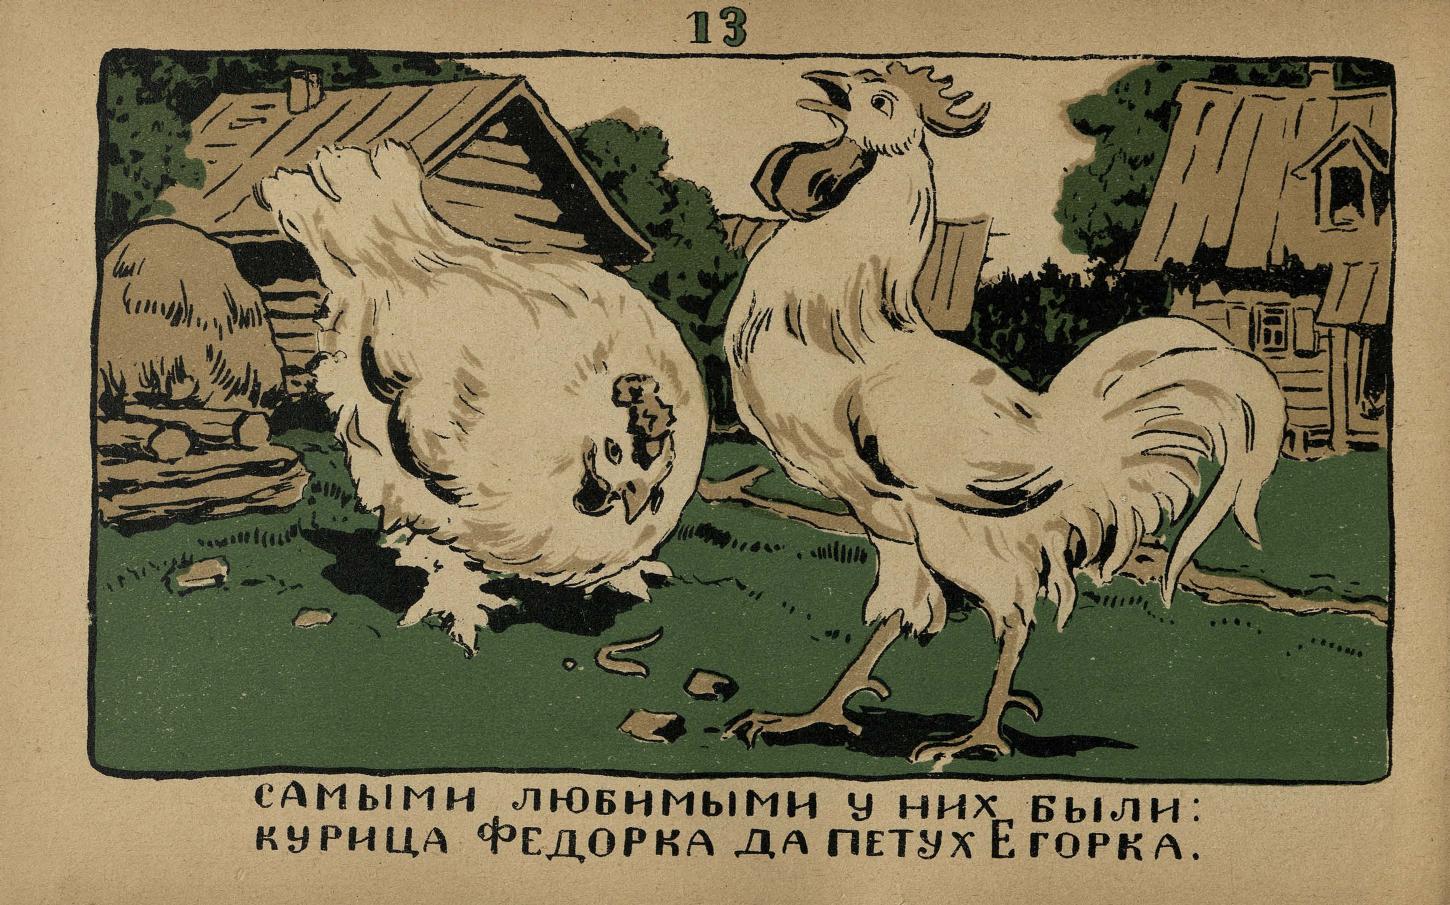 Сказка про курицу с петухом и их находке